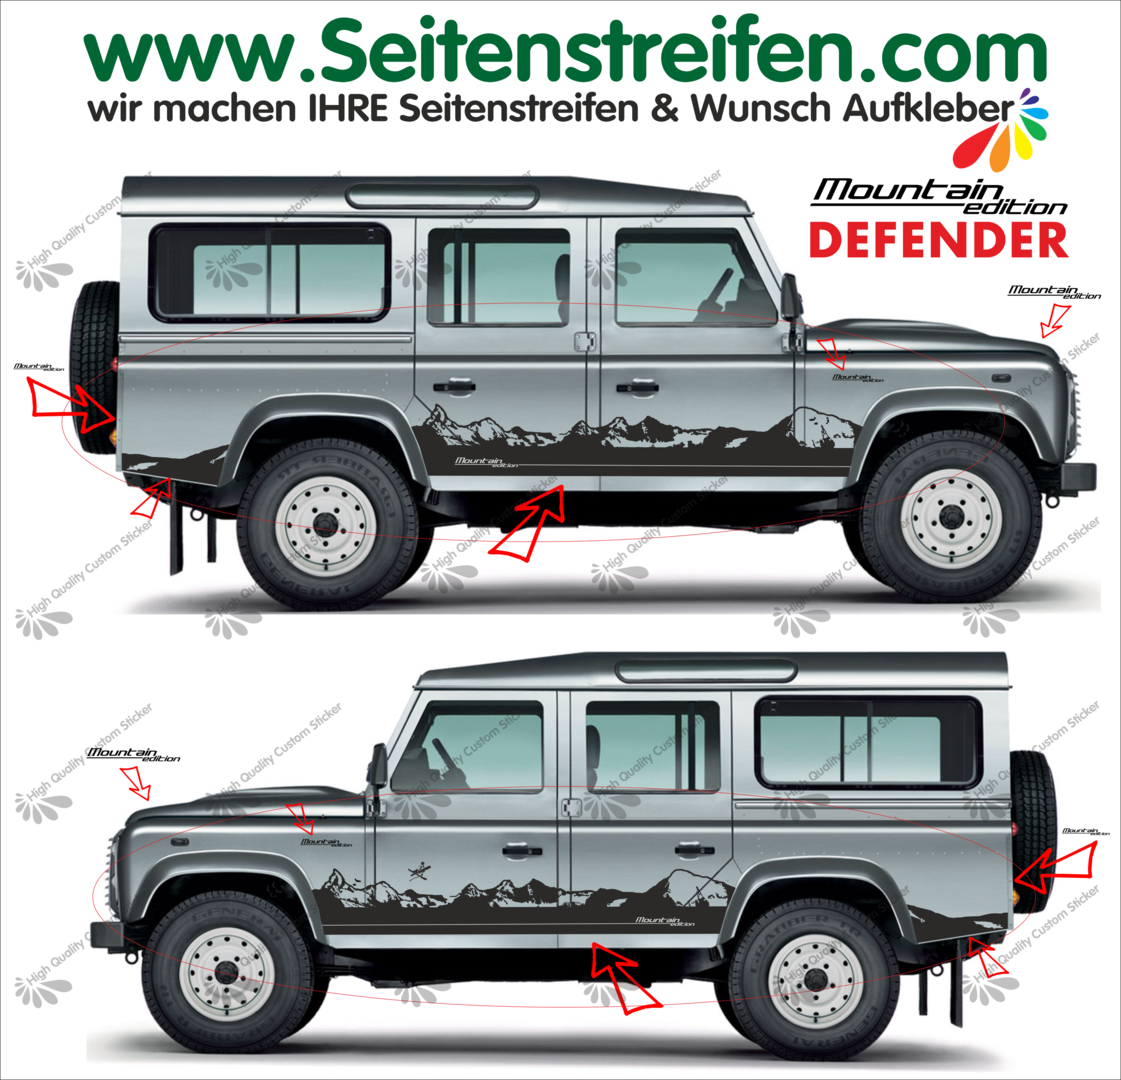 Land Rover Defender - Matterhorn Mountain Edition - Graphics Decals Sticker Kit - Nº 8002